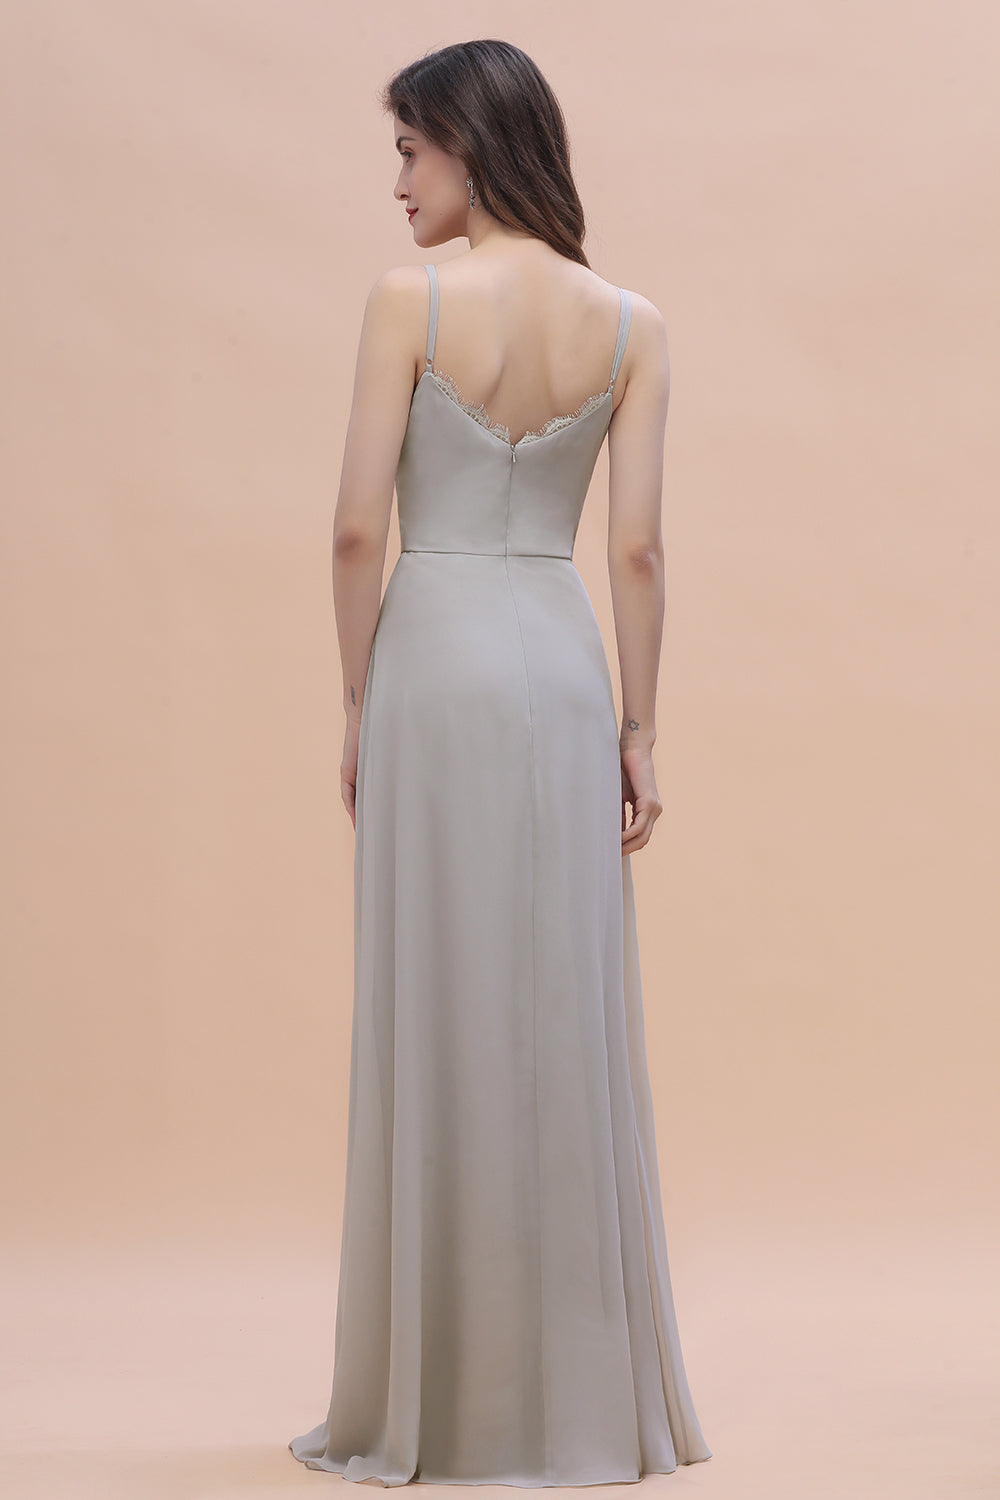 Finden Sie Siber Brautjungfernkleider Lang Chiffon online bei babyonlinedress.de. Schlichtes Abendkleid maß geschneidert bekommen.